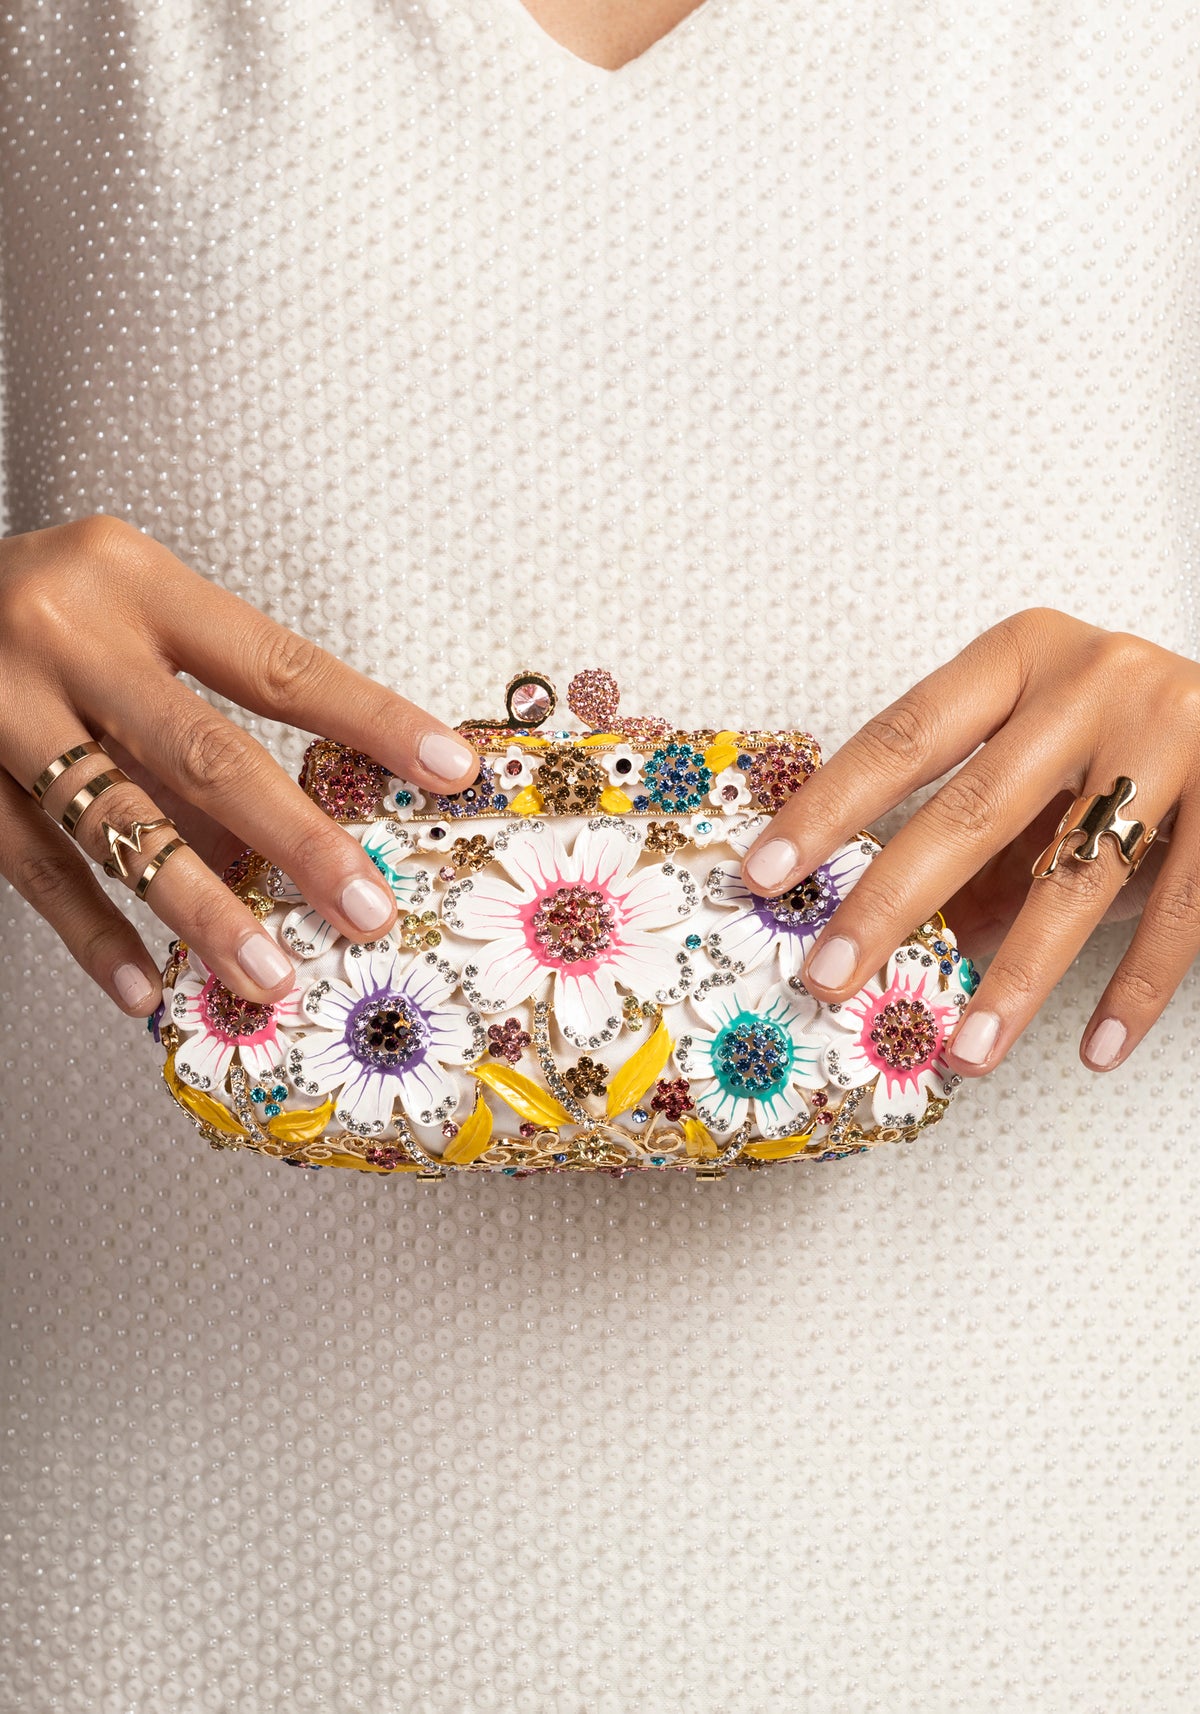 Gemstone ornate luxury handbag